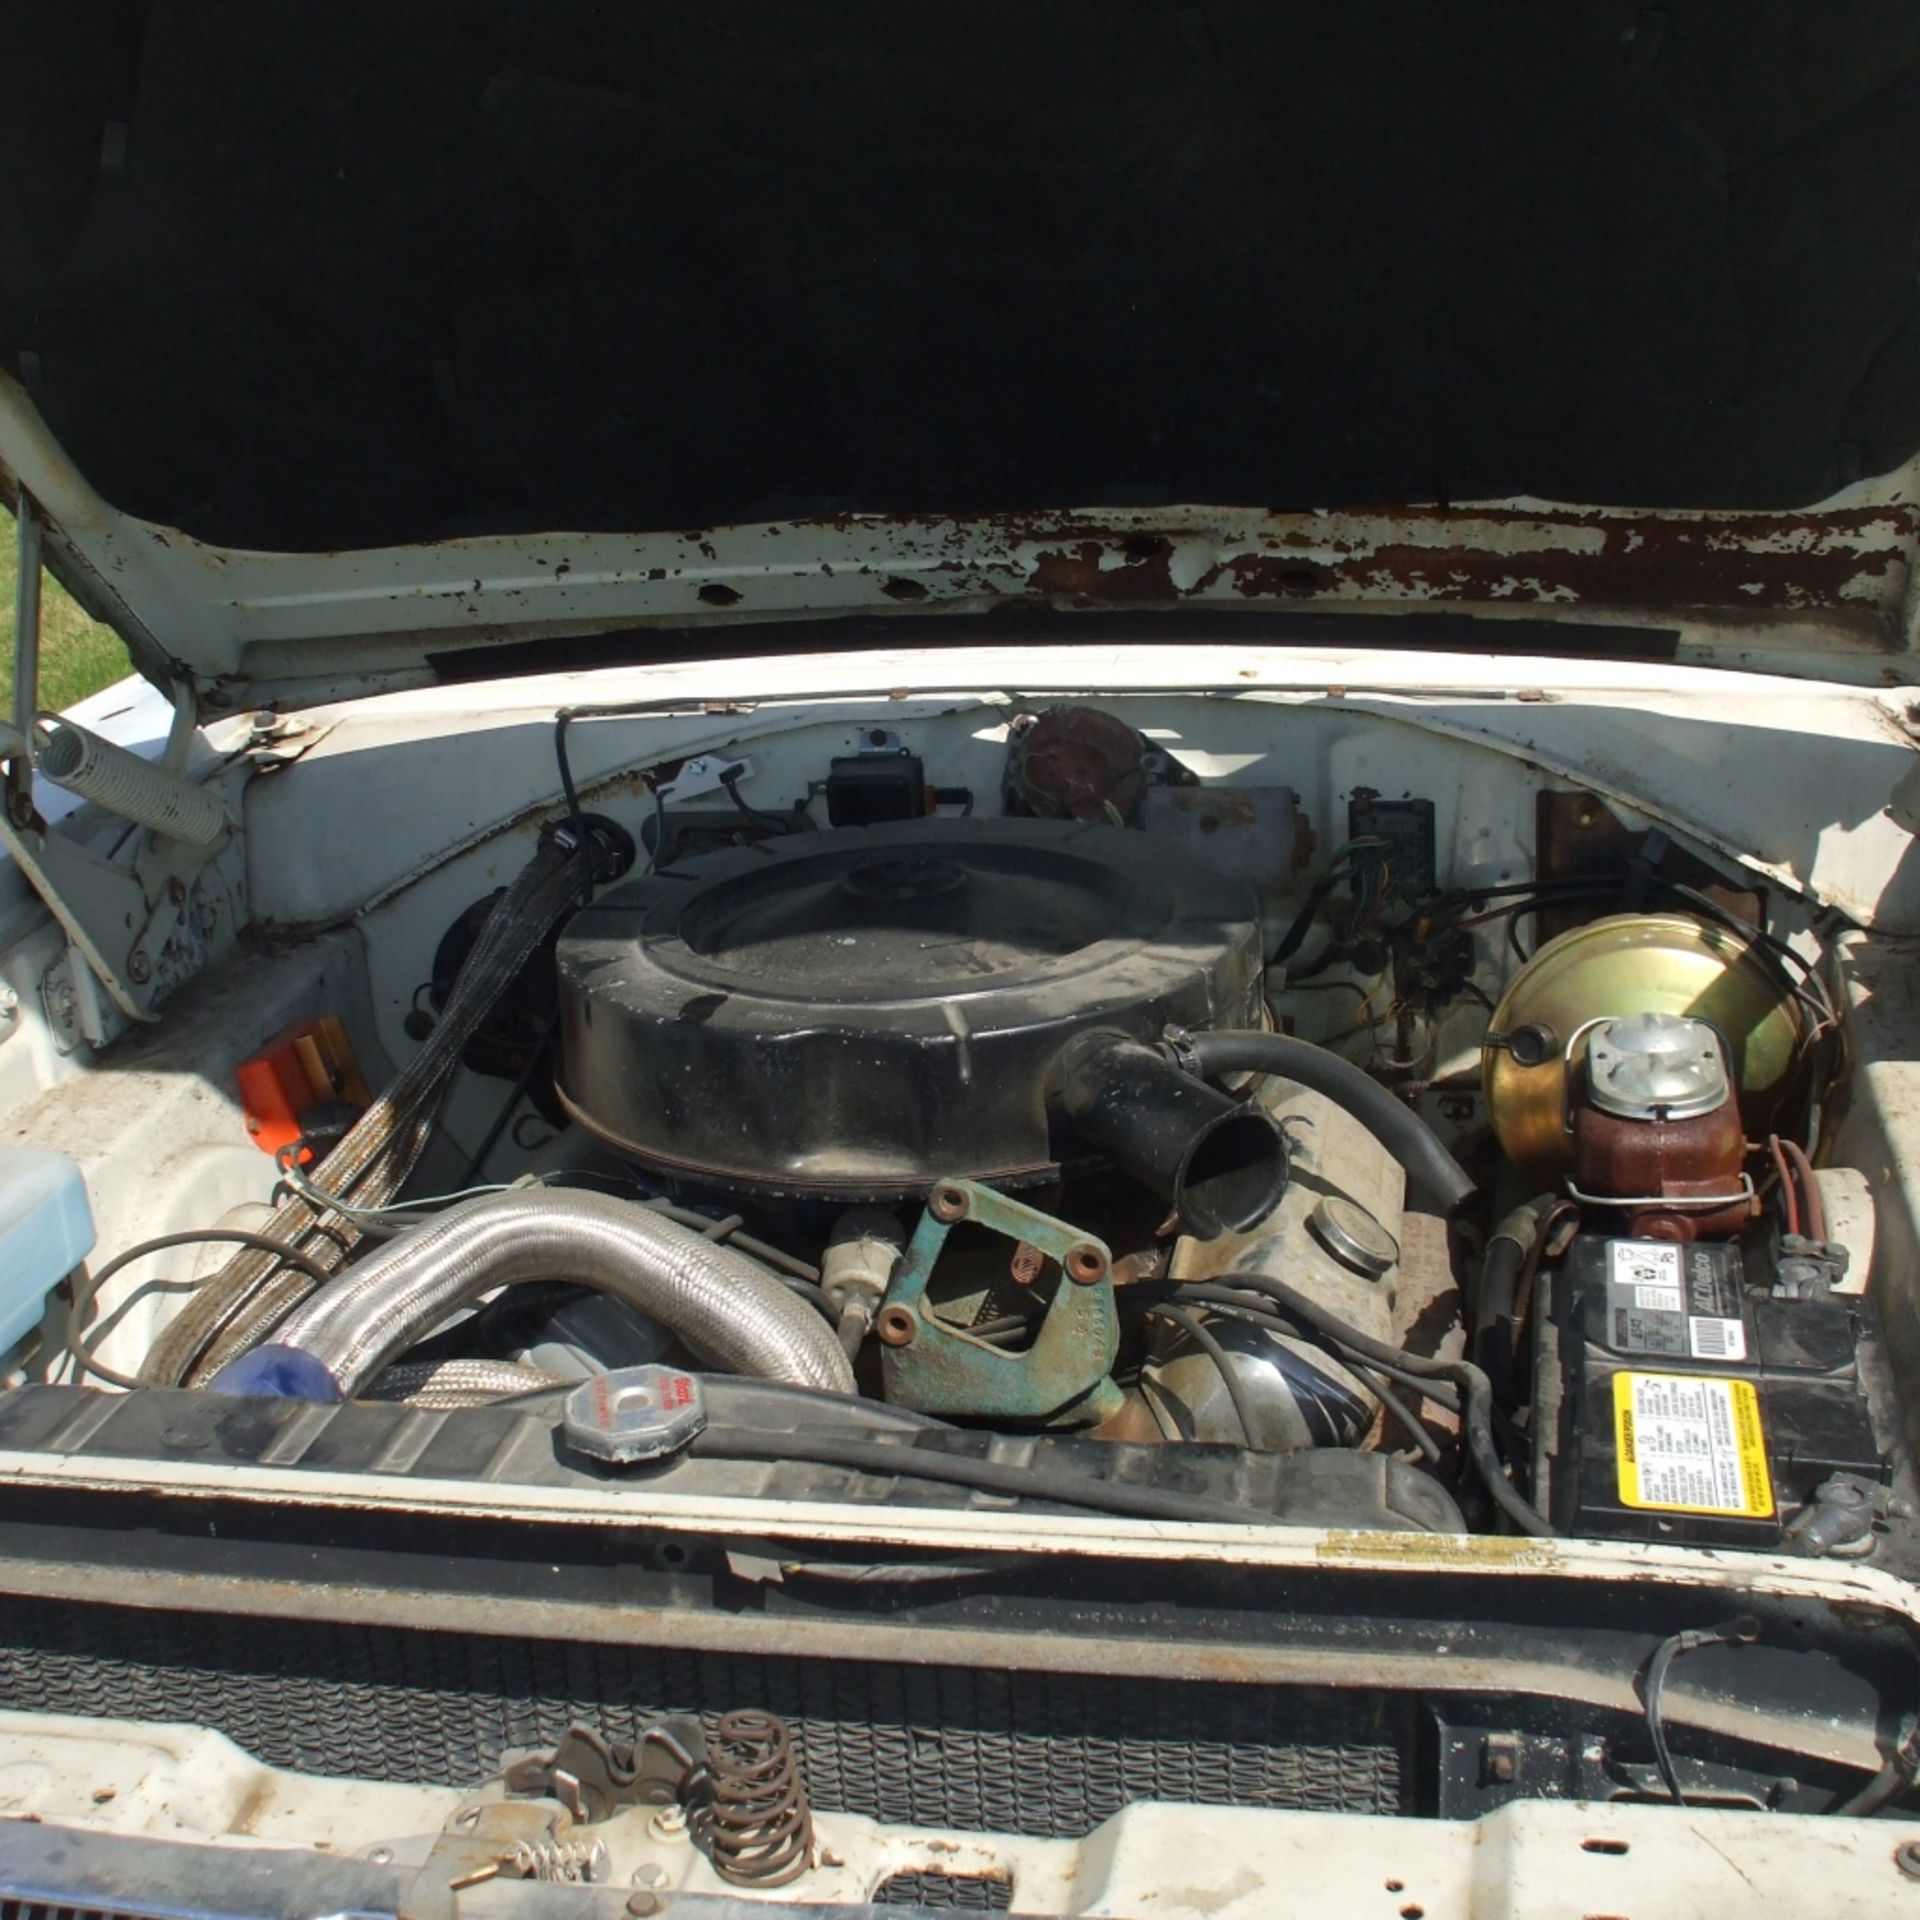 1967 Dodge Coronet 440,V8,383 motor, white, started last fall - Image 7 of 11